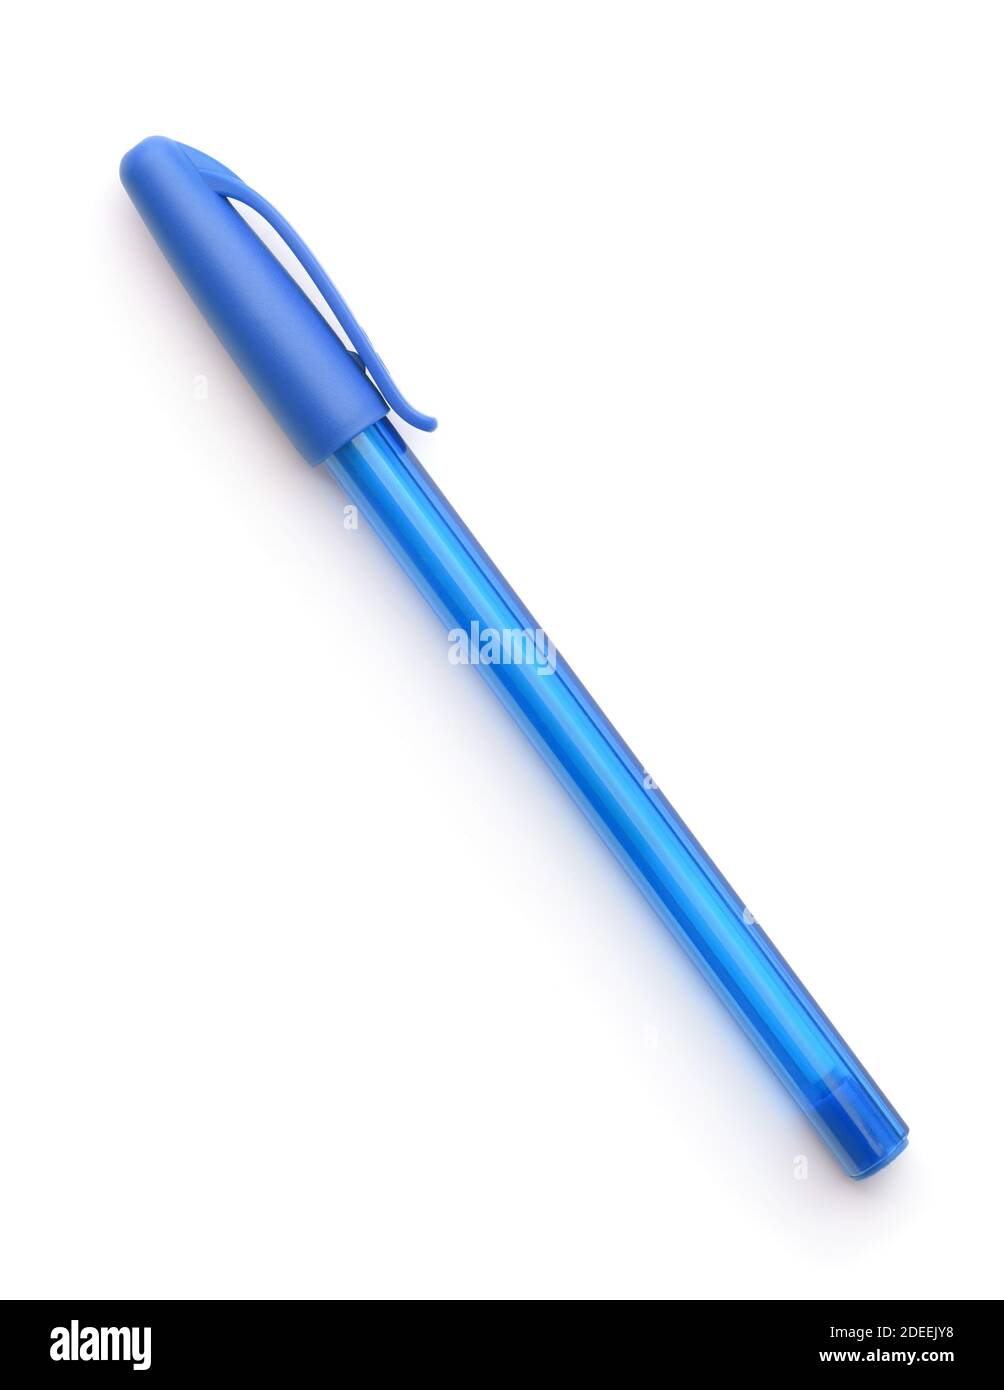 Stylo à bille jetable en plastique bleu fermé isolé sur blanc Photo Stock -  Alamy